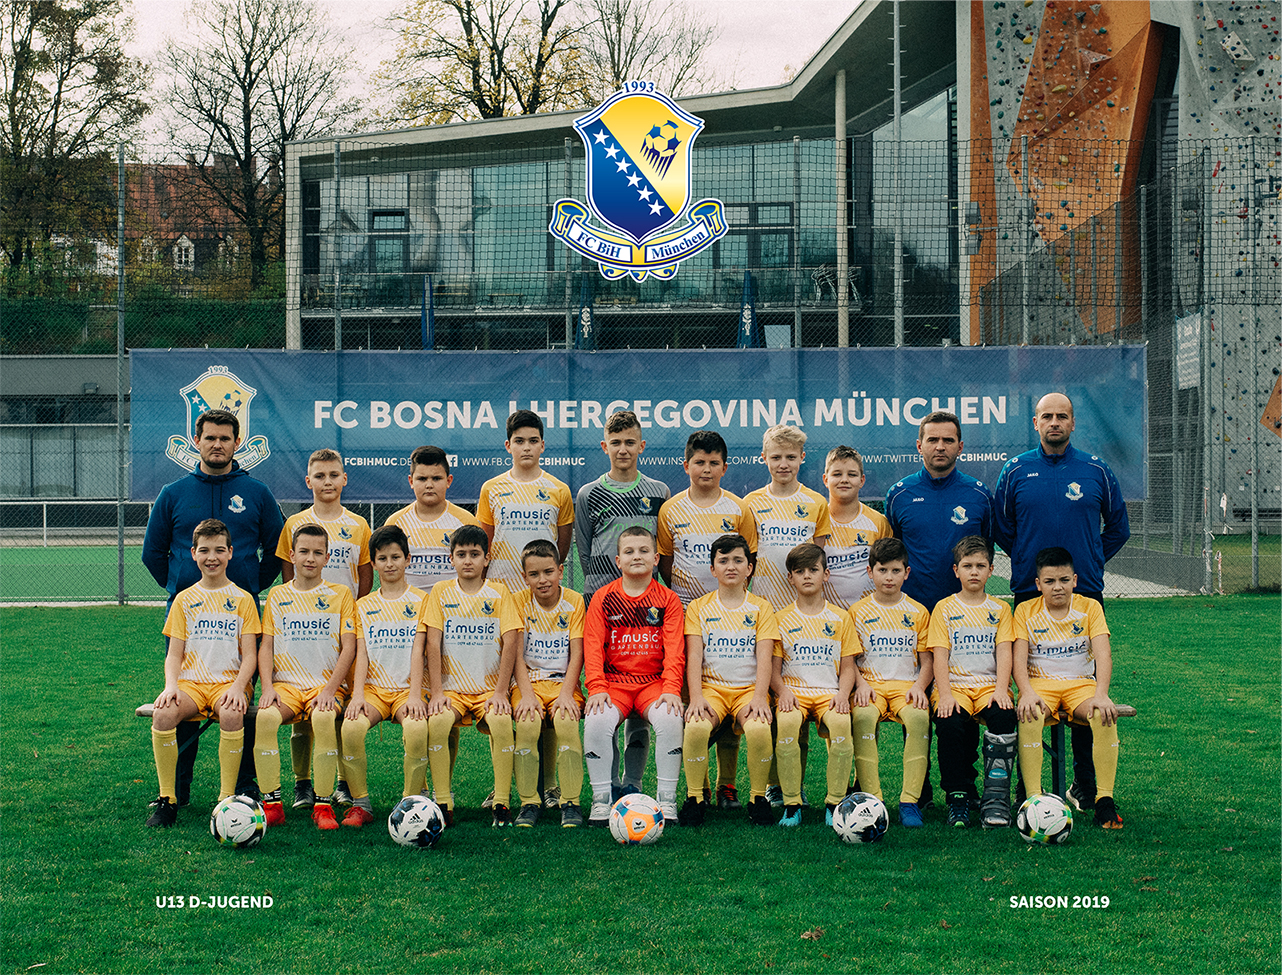 U13 (D-Jugend) - Saison 2019 - Mannschaftsfoto